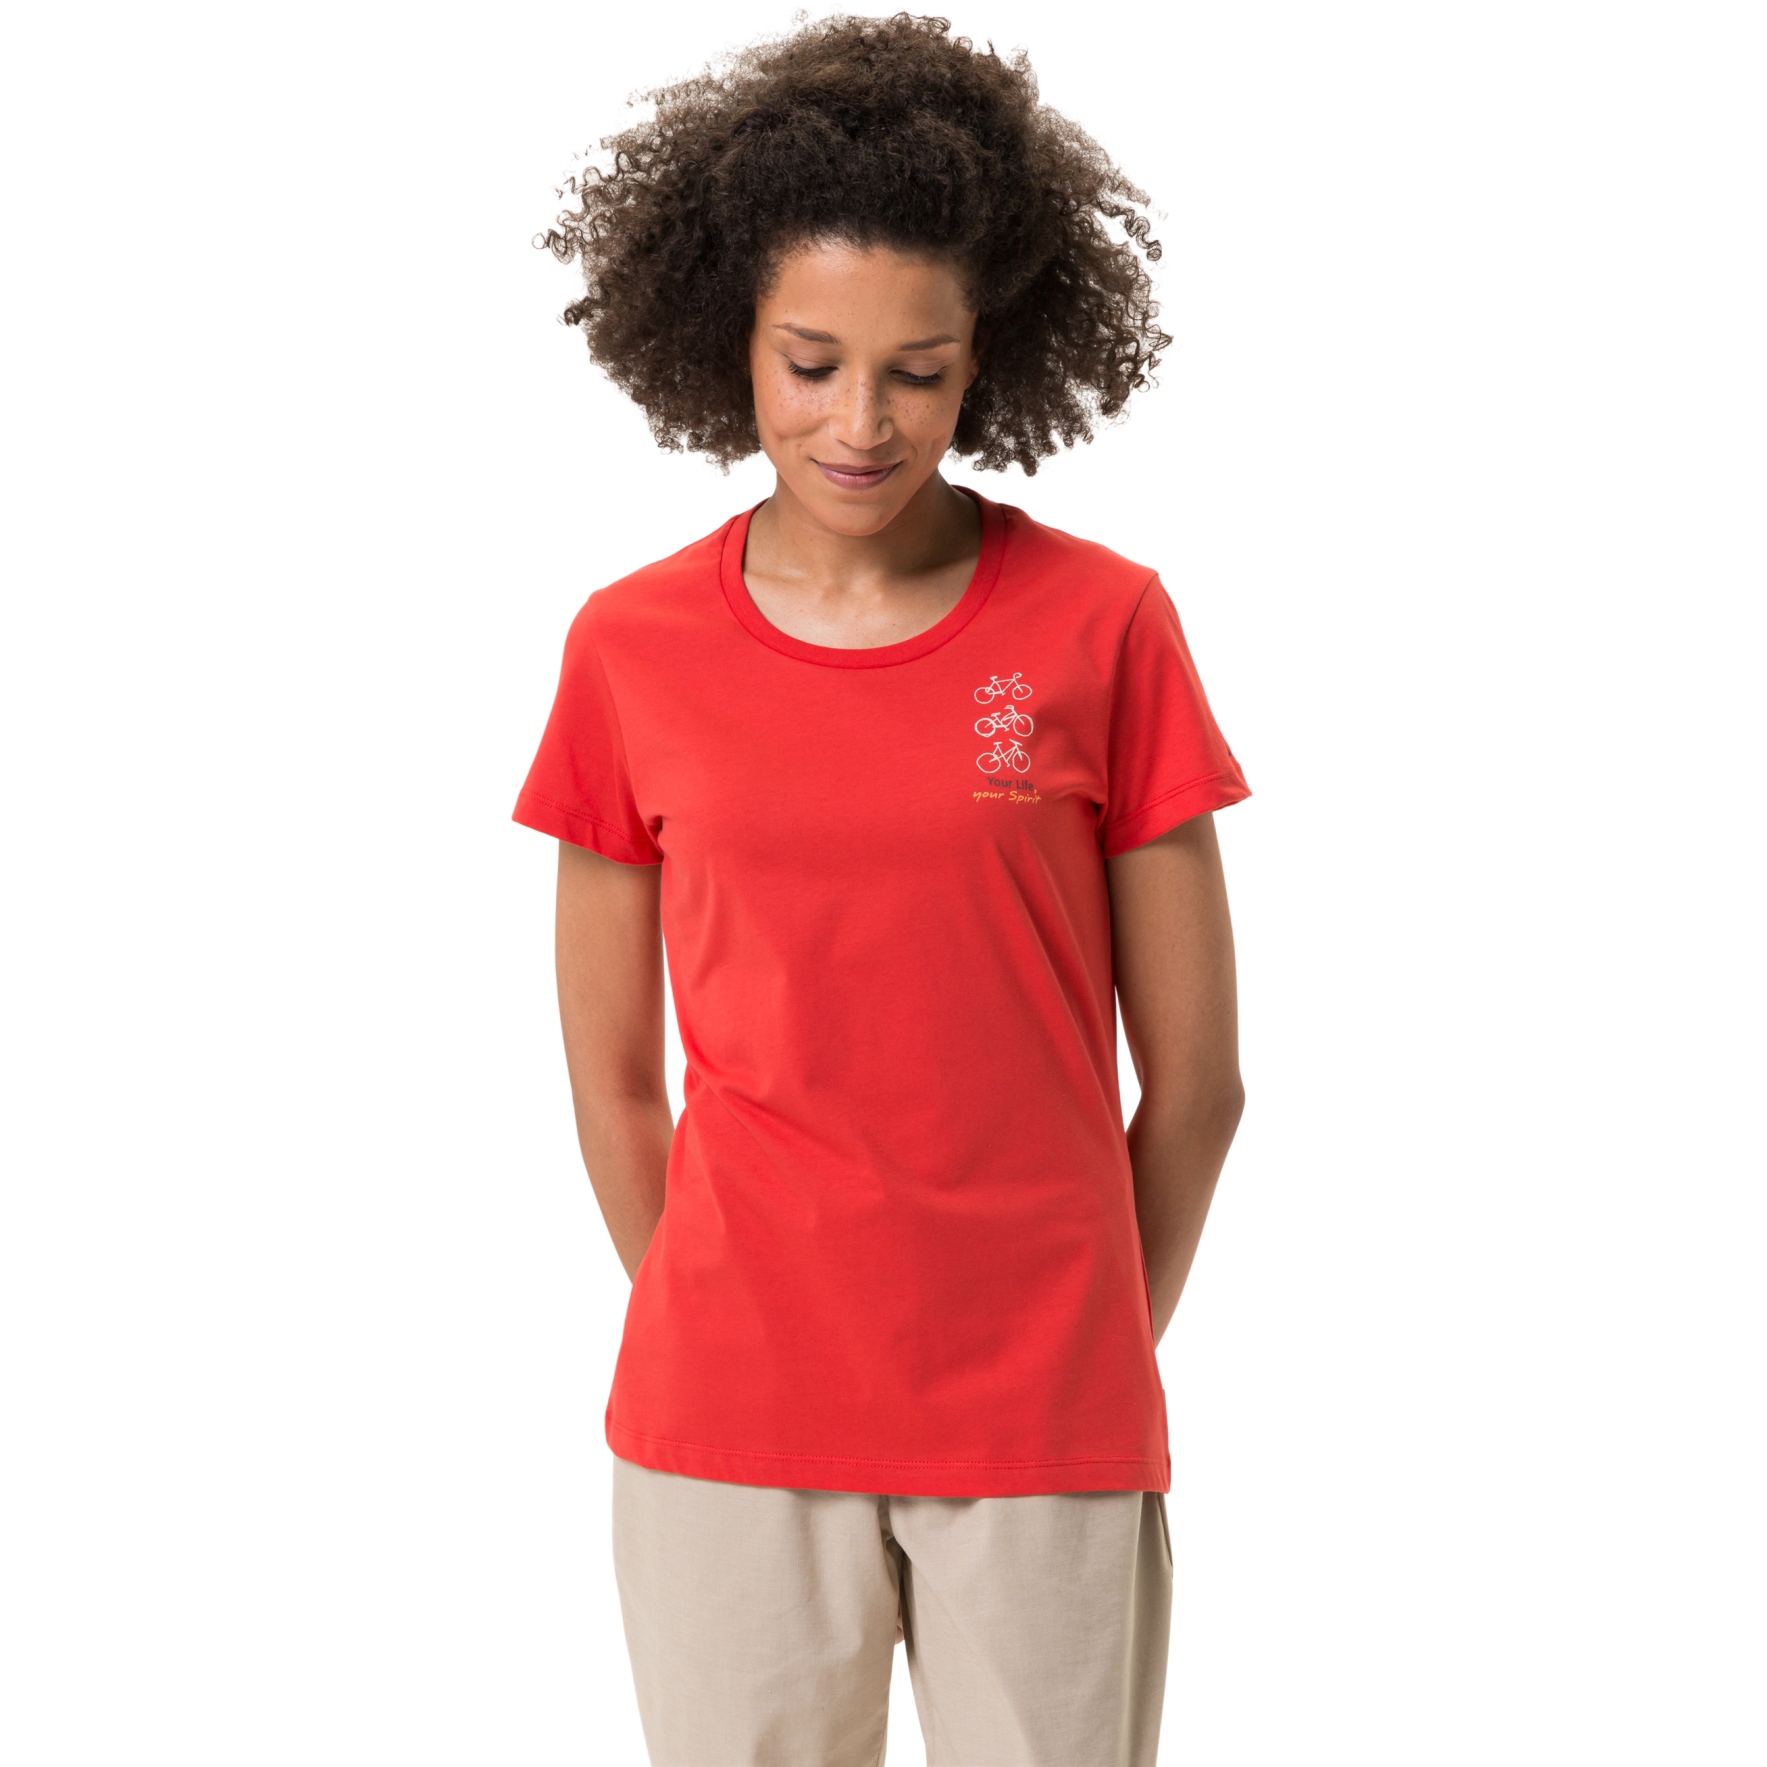 Produktbild von Vaude Spirit T-Shirt Damen - flame